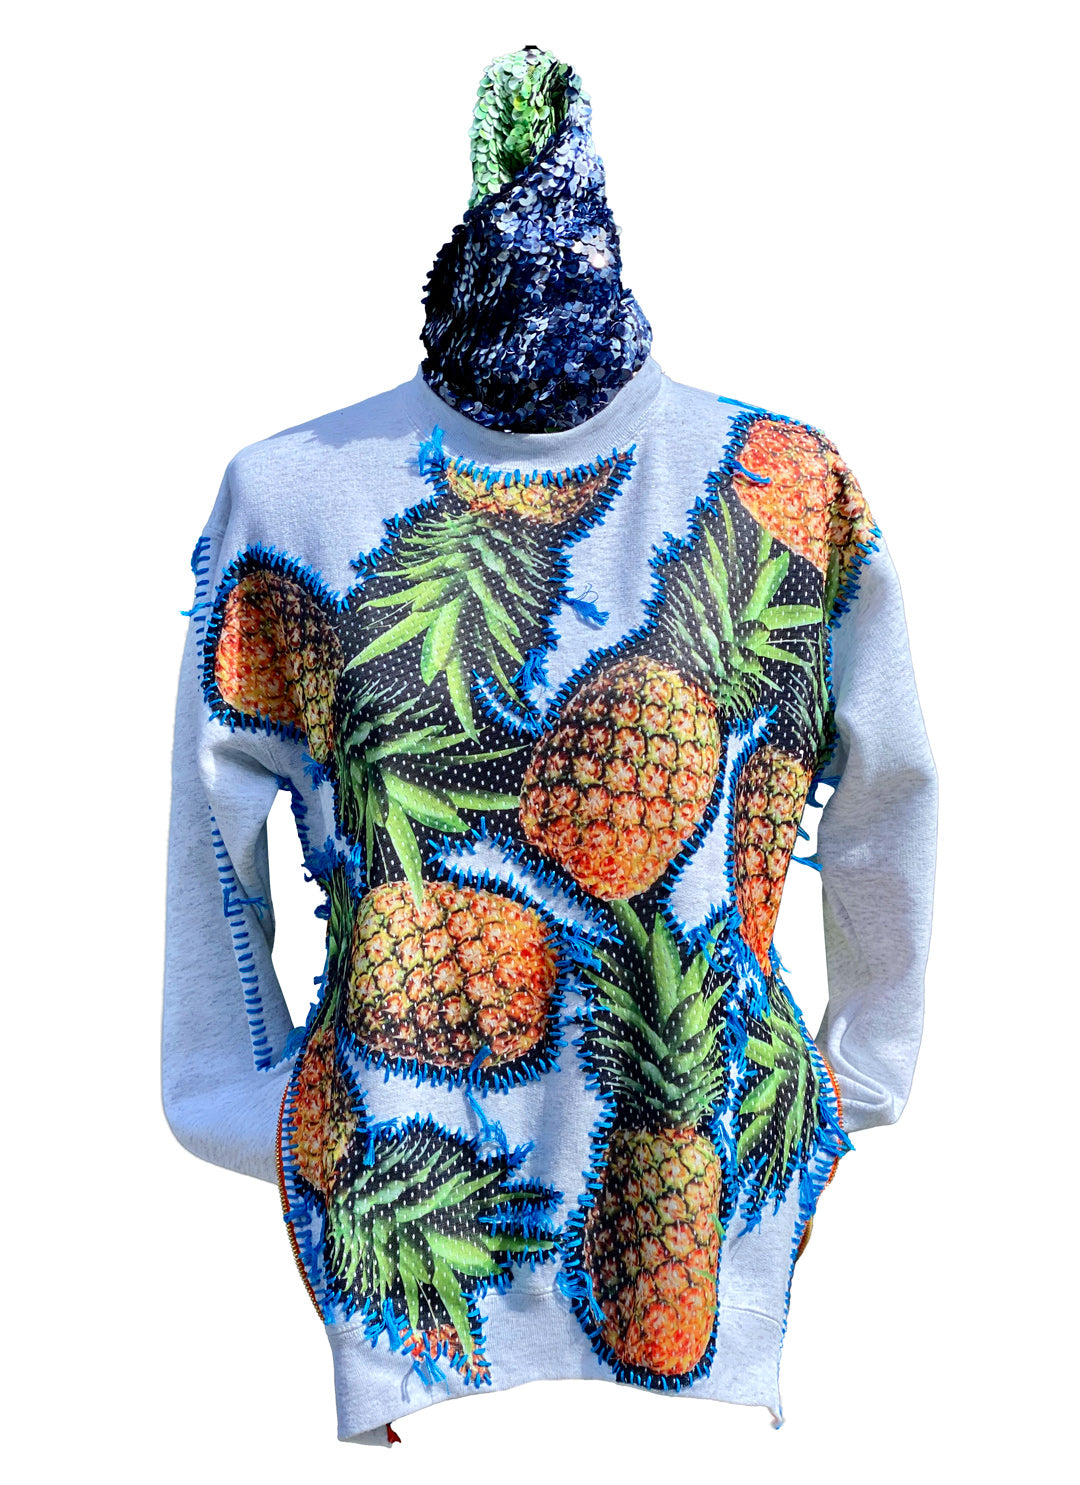 Fruit Company Unisex Sweatshirt